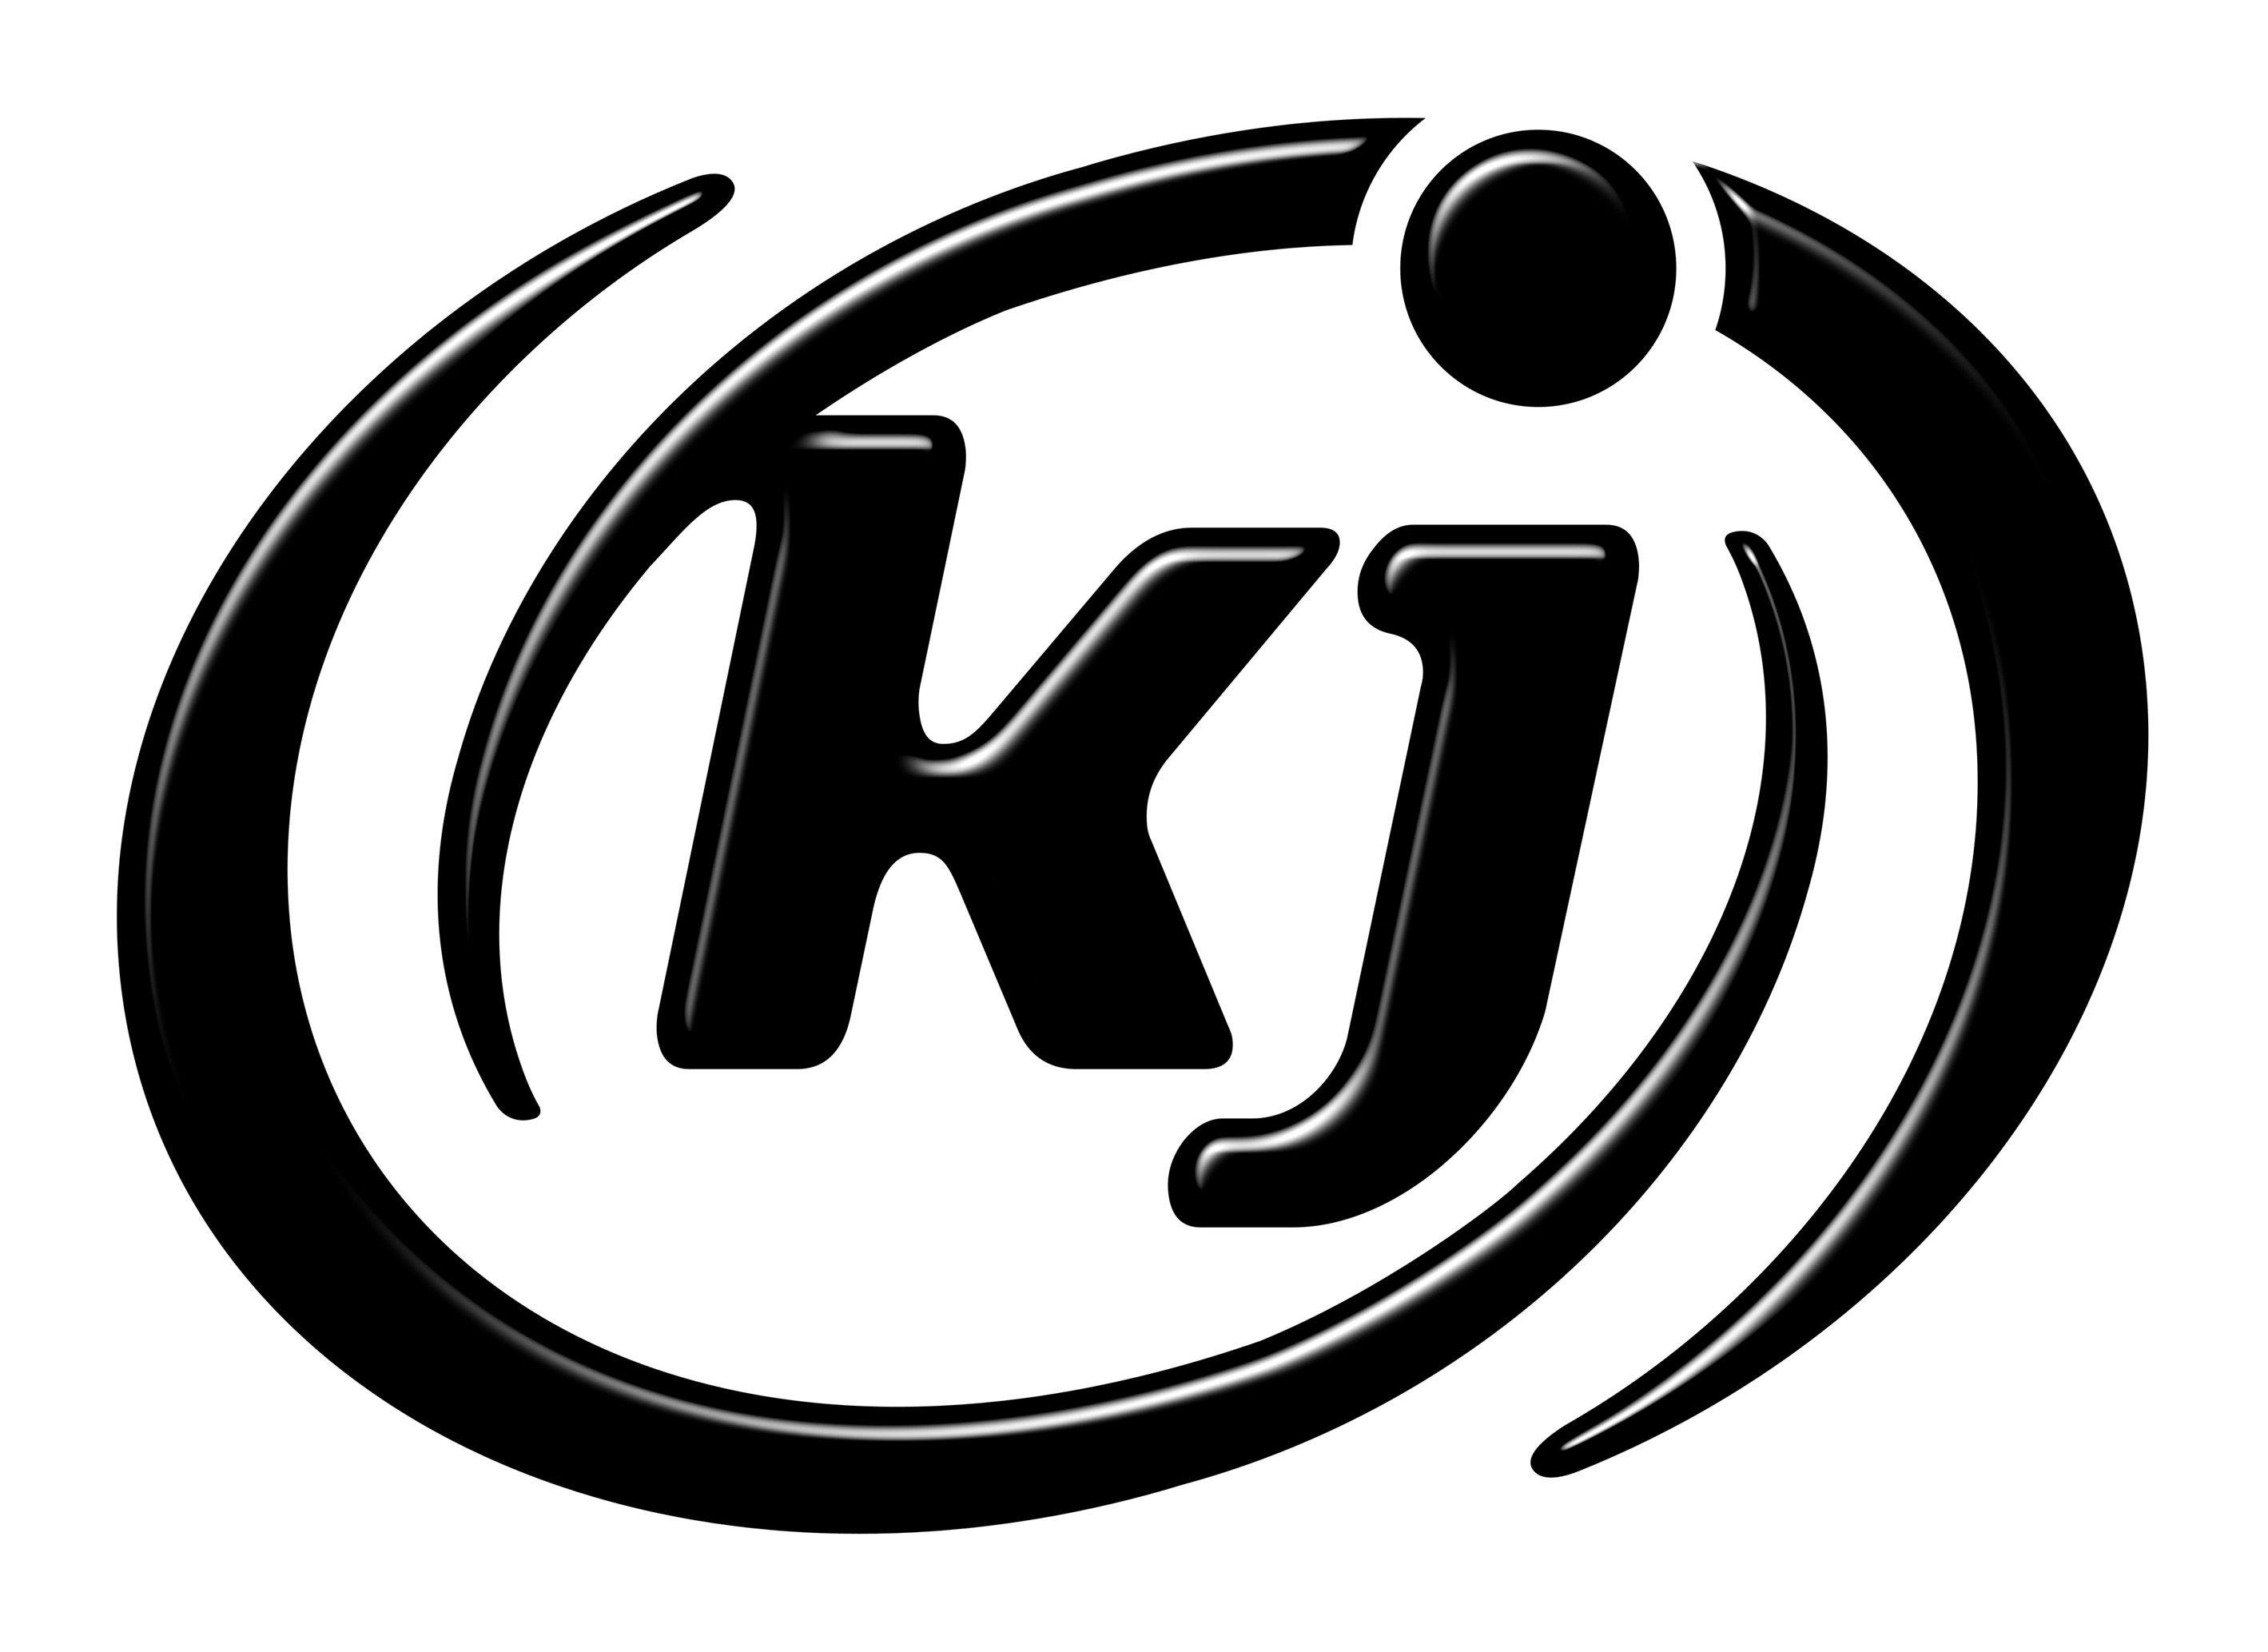 KJ Logo - kj logo | Logos | Logos, Name logo, Buick logo